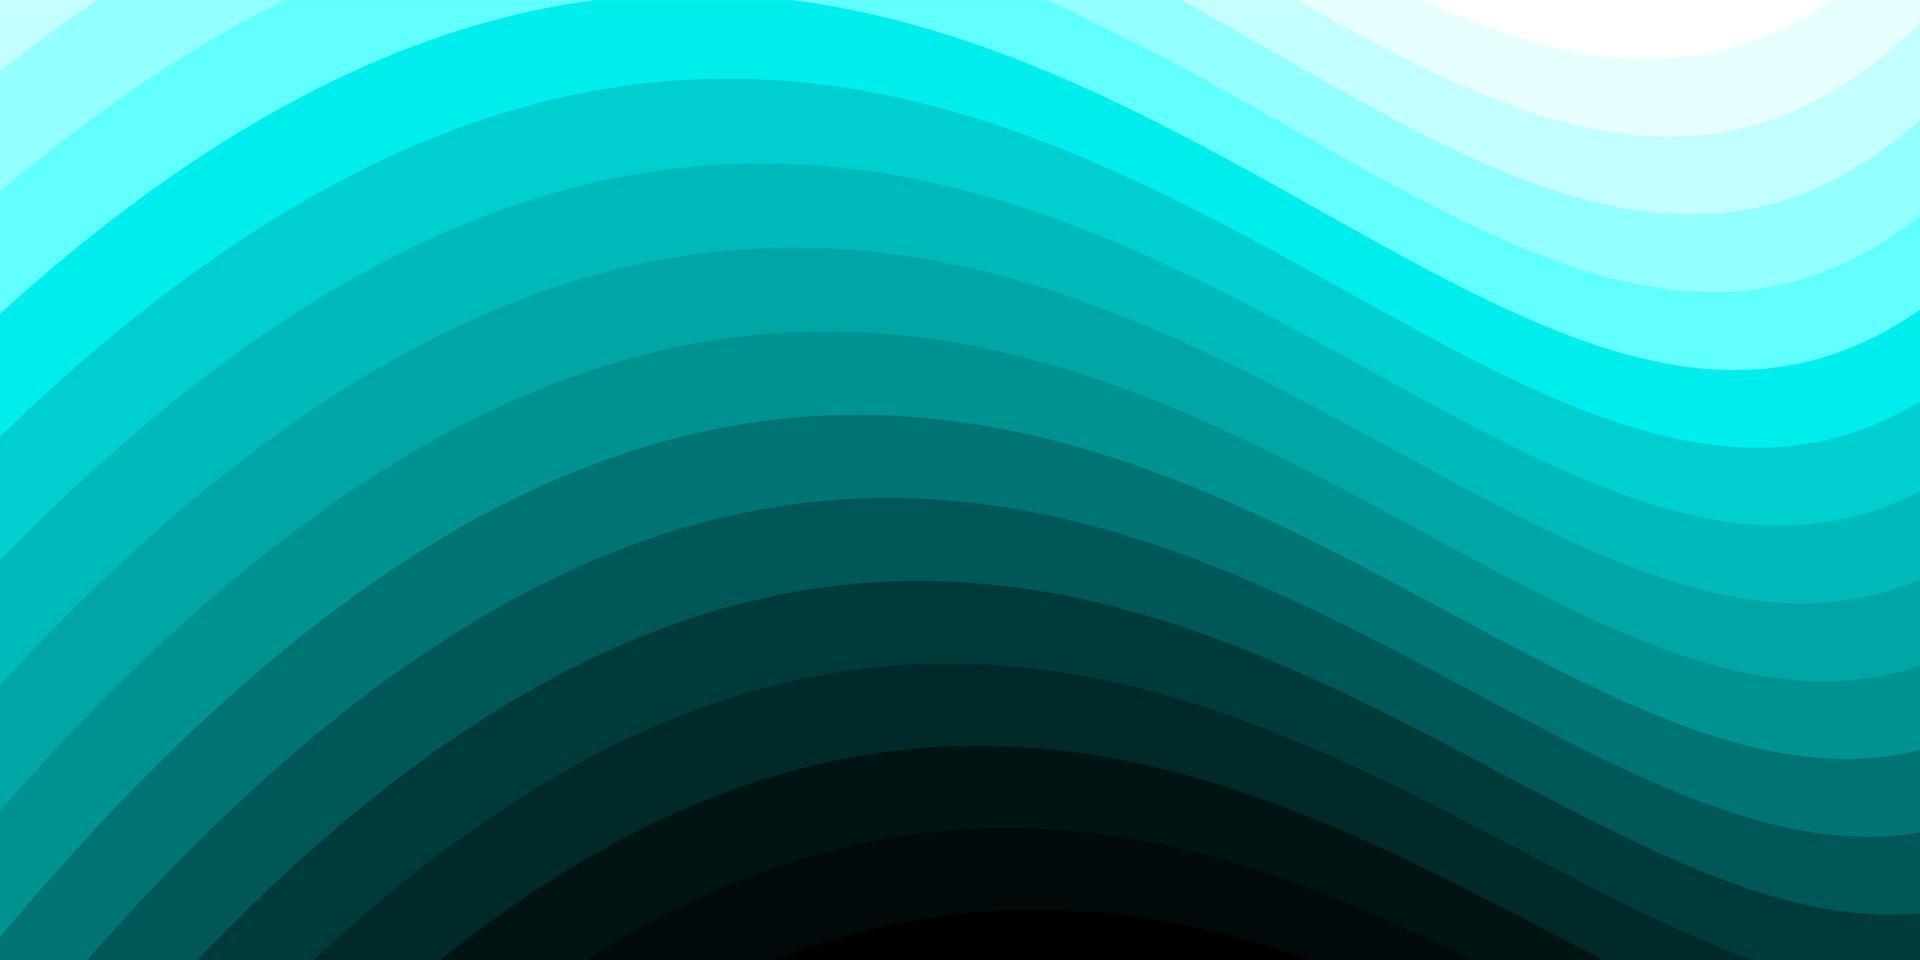 minimalistische blaugrüne wellenlinie hintergrundvorlage. abstrakter Kurvendesignvektor. vektor